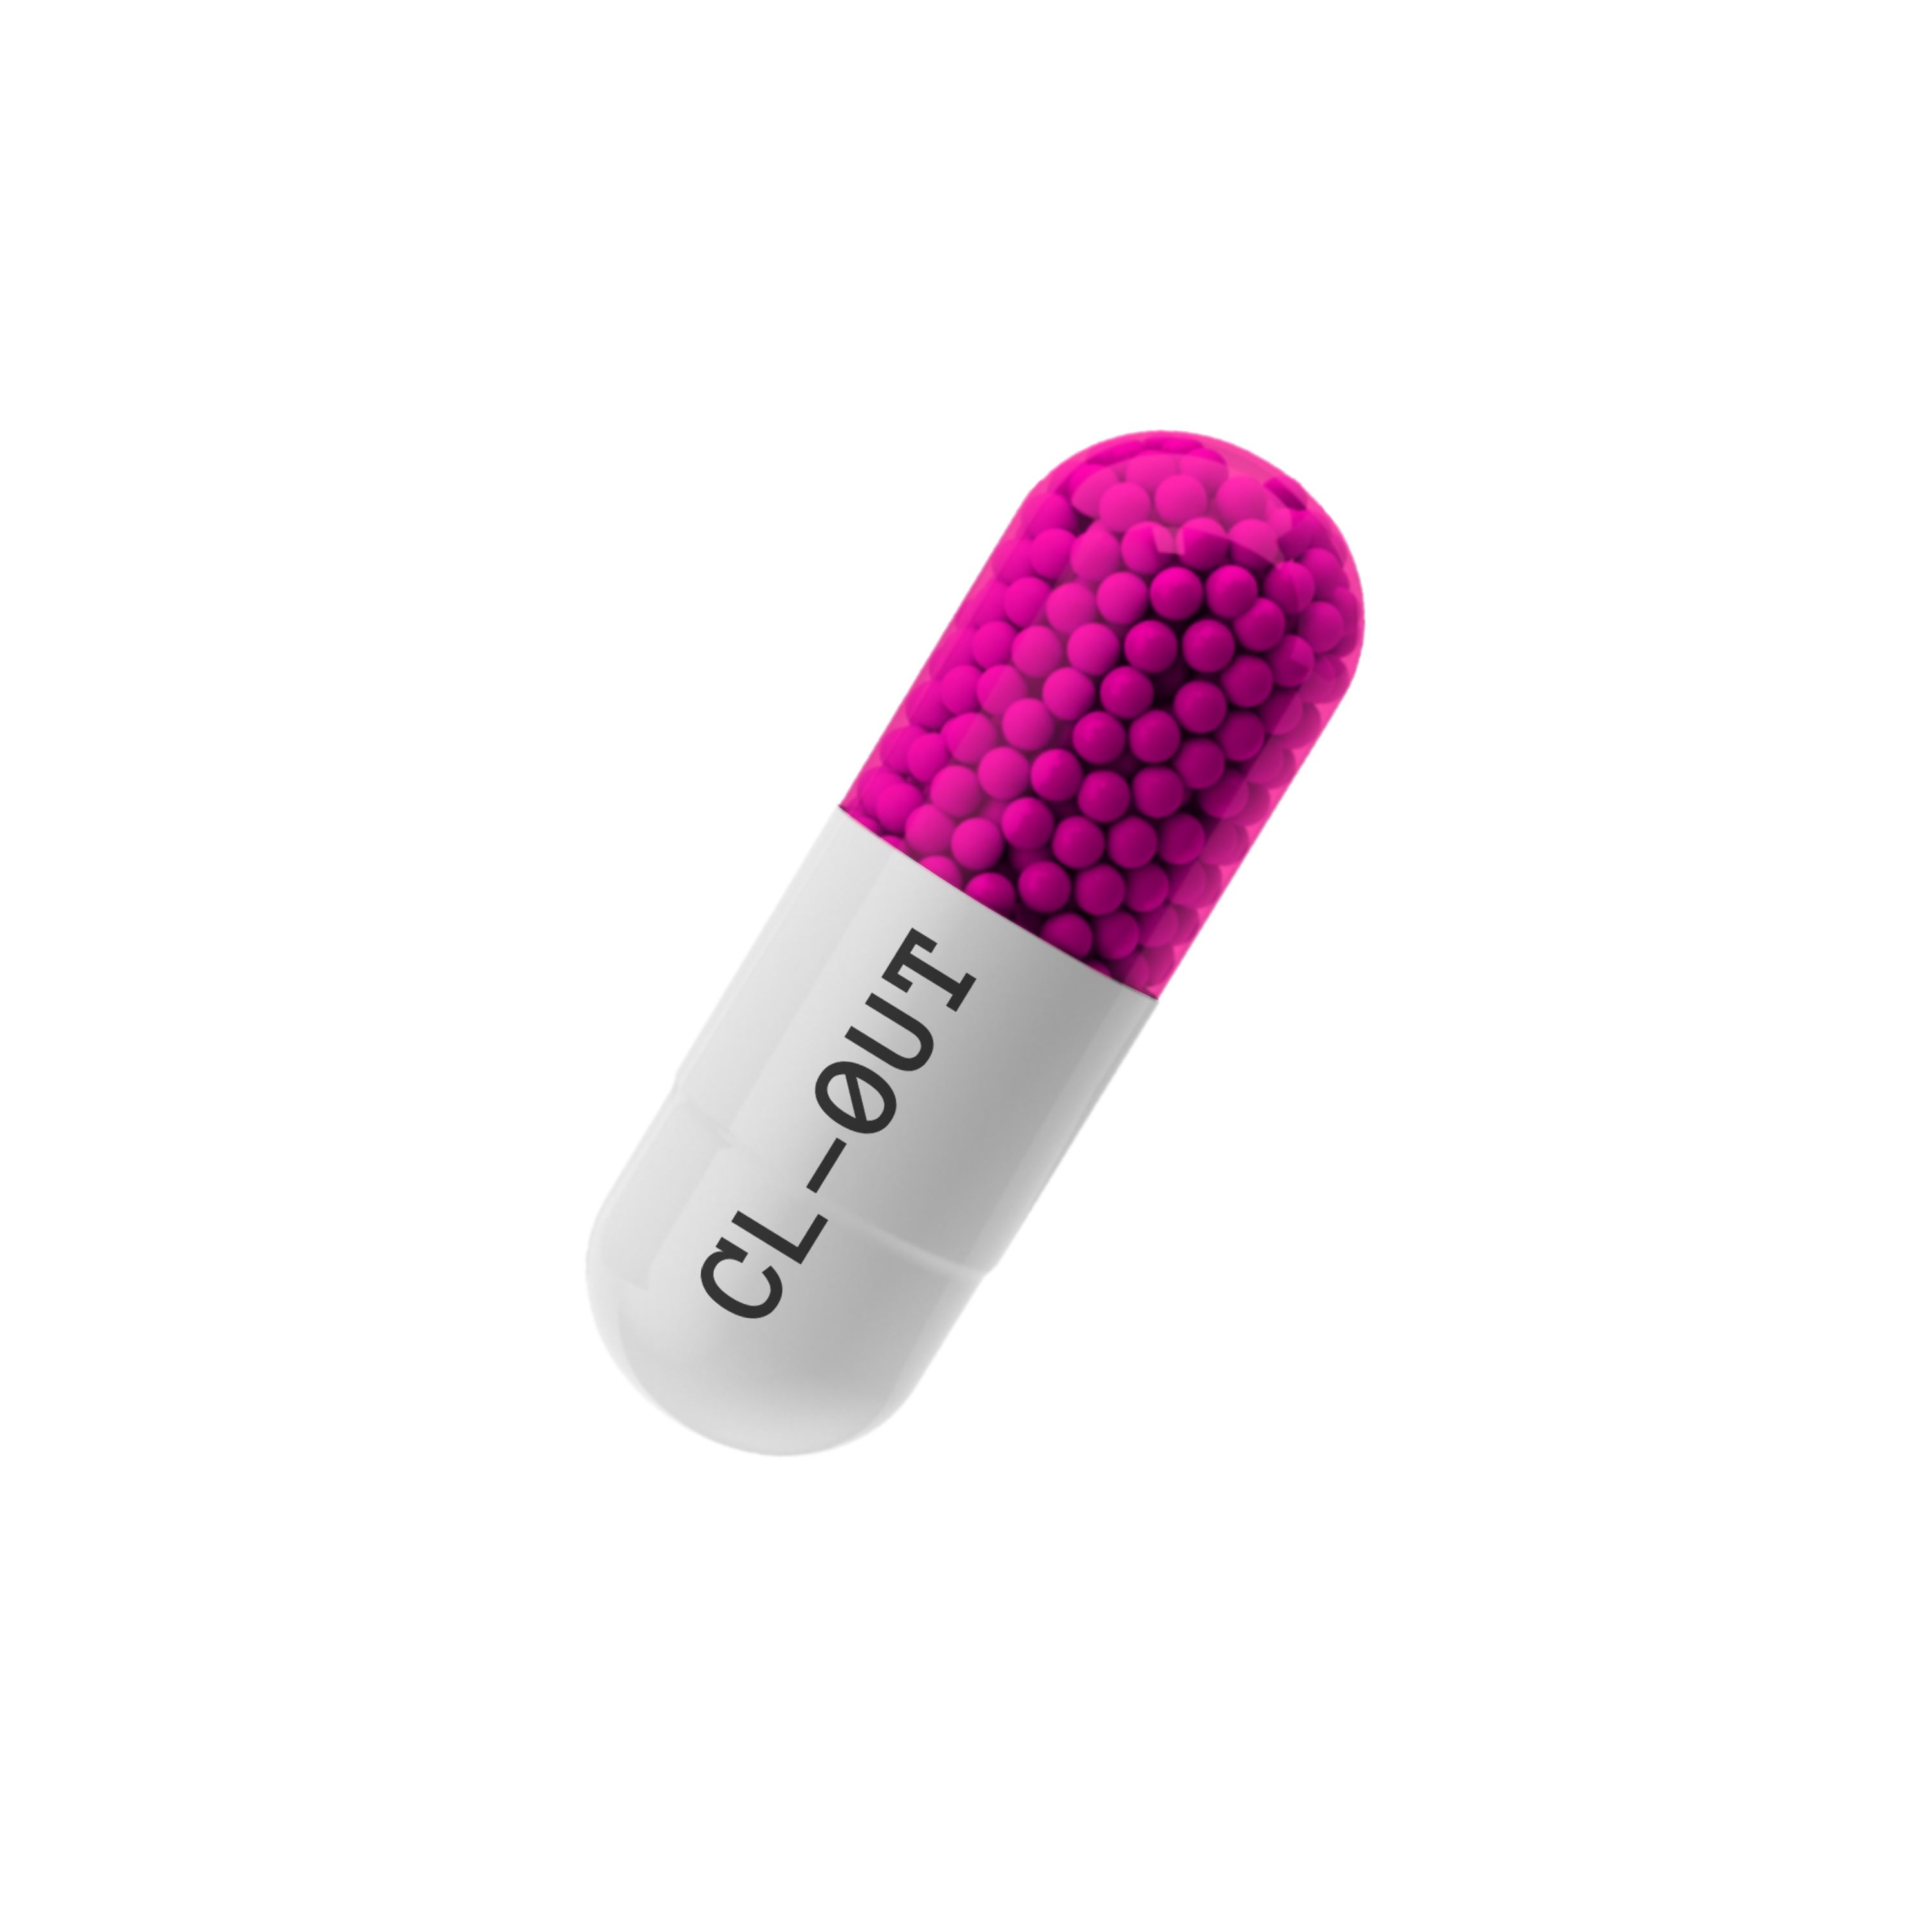 Cl0ut_Pill//#16